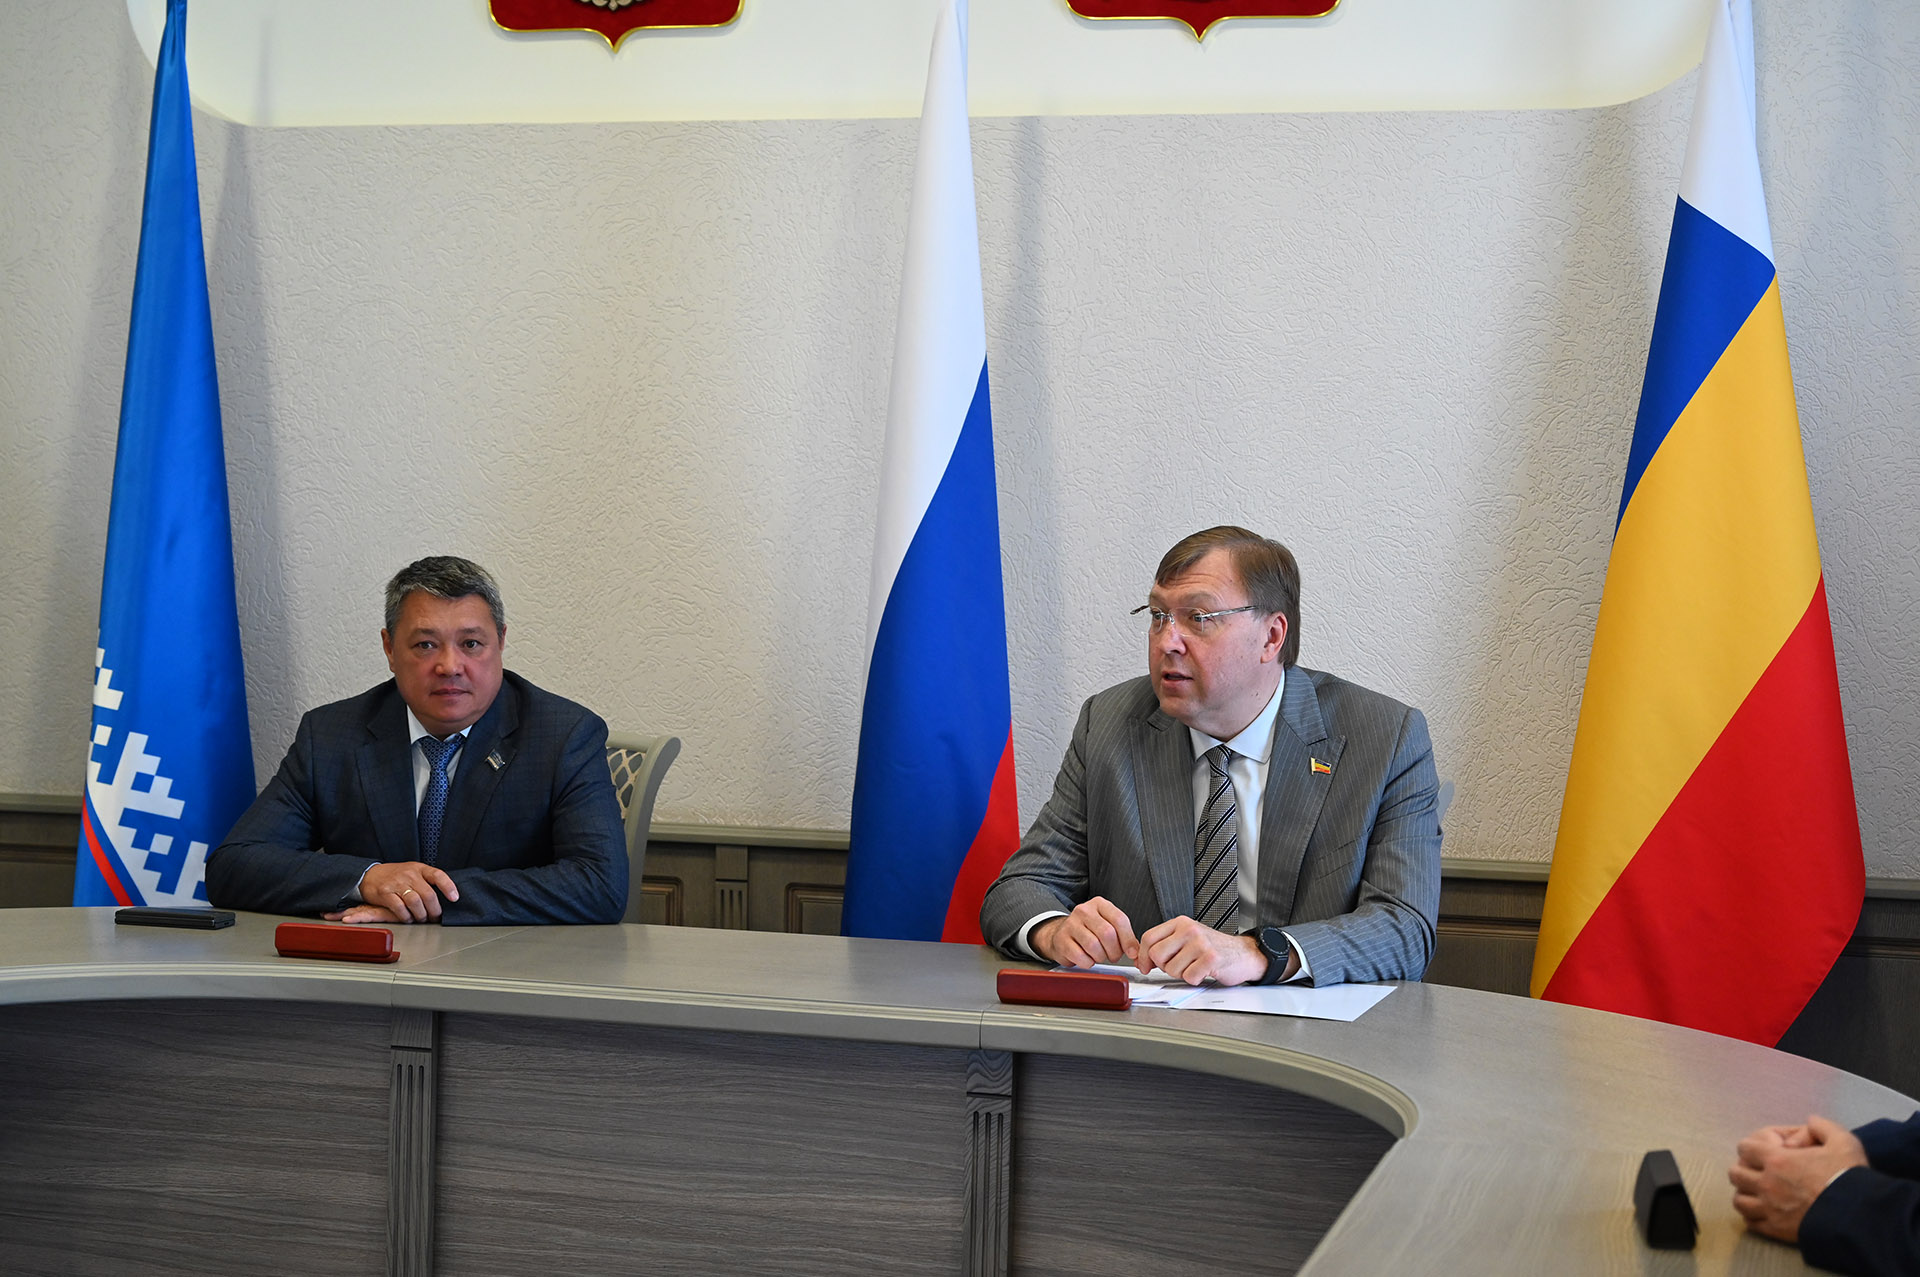 Между донским парламентом и Законодательным Собранием Ямало-Ненецкого автономного округа заключено соглашение о сотрудничестве